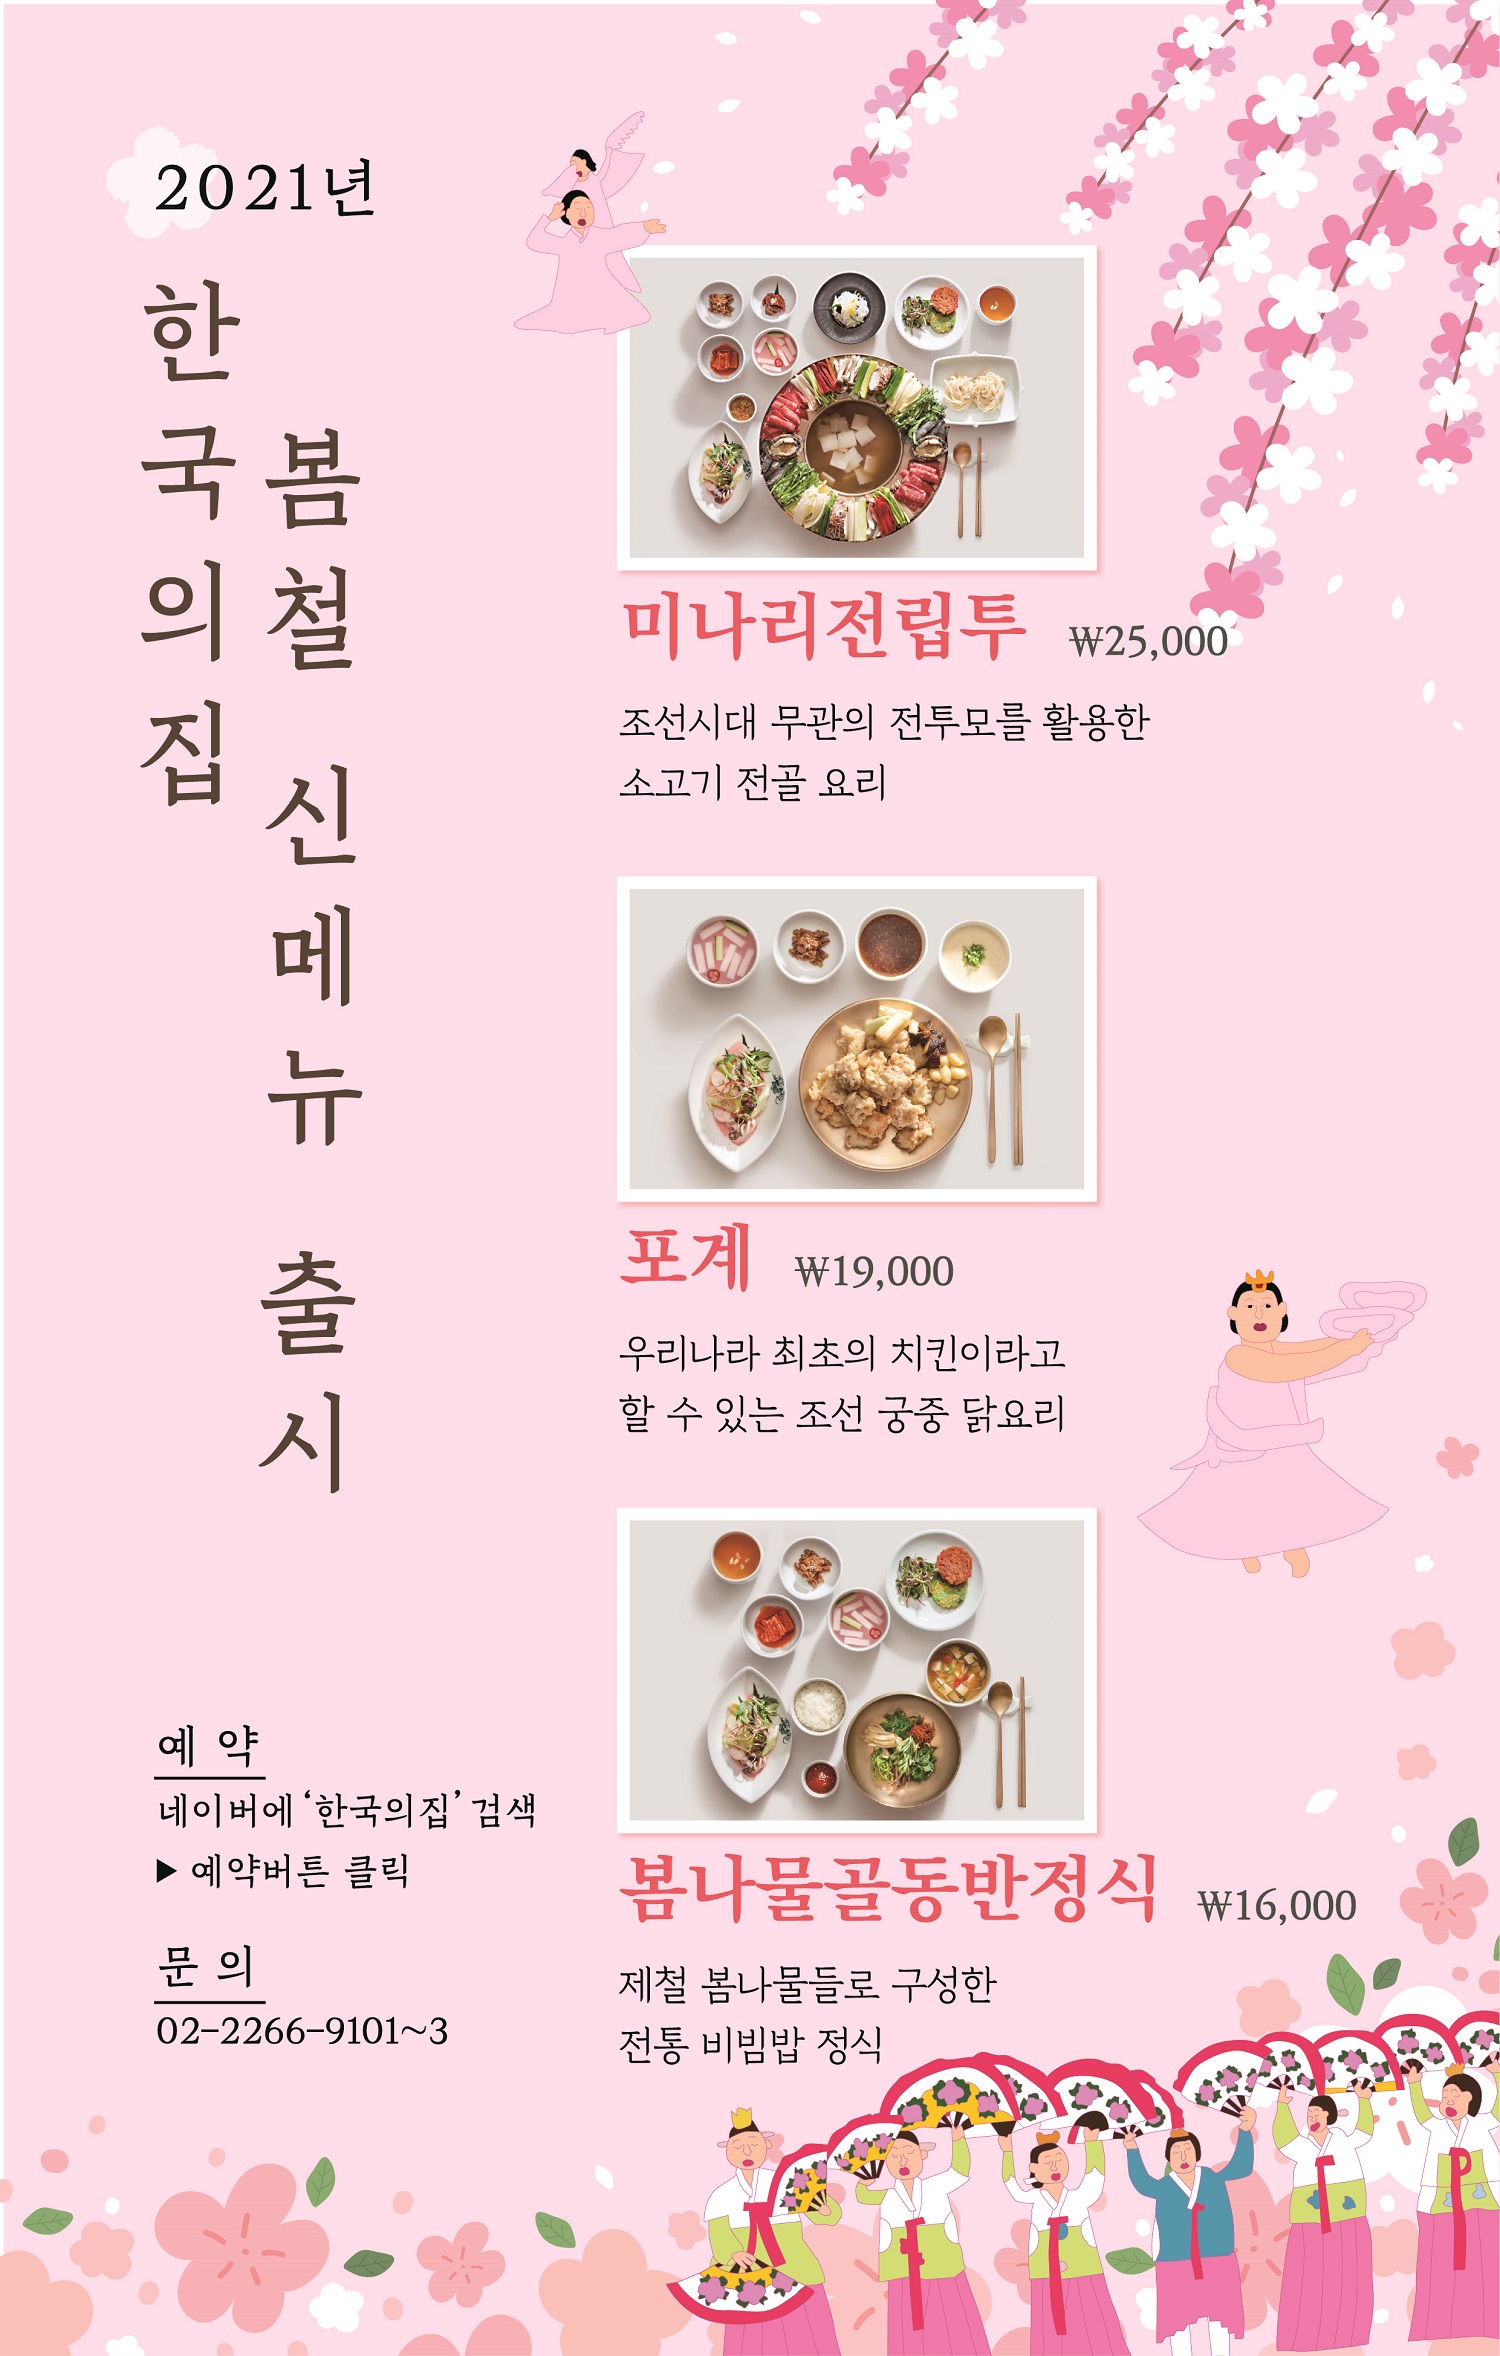 2021년 한국의집 봄철 신메뉴 출시 포스터(상세 내용 하단 참조)